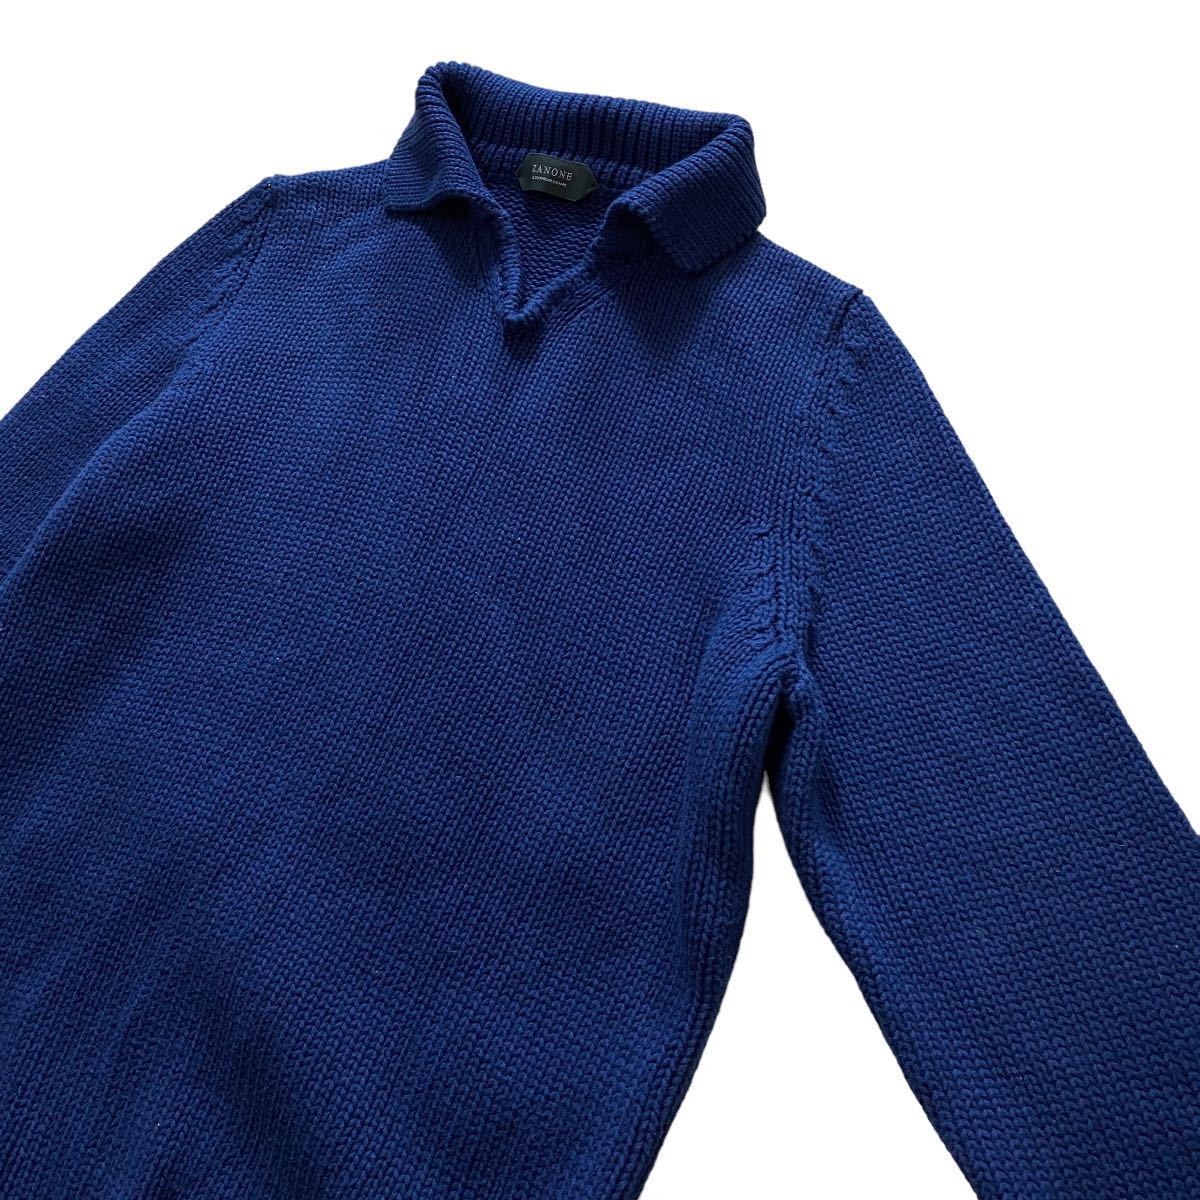  прекрасный товар ZANONE The no-ne Skipper цвет средний мера вязаный свитер мужской 46 S~M